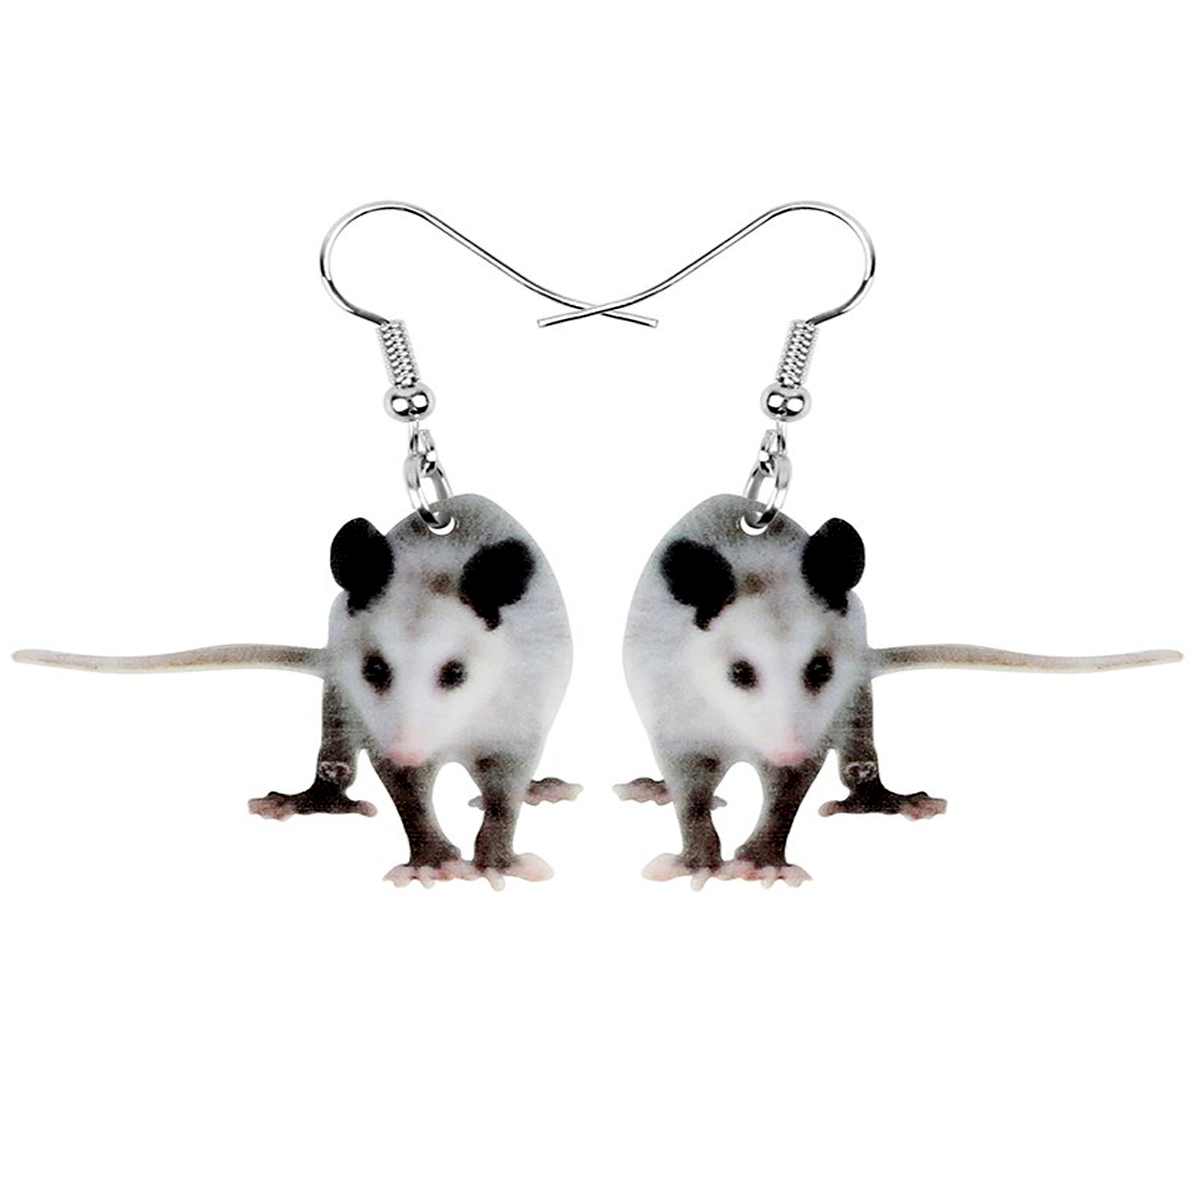 Darling Opossum Earrings